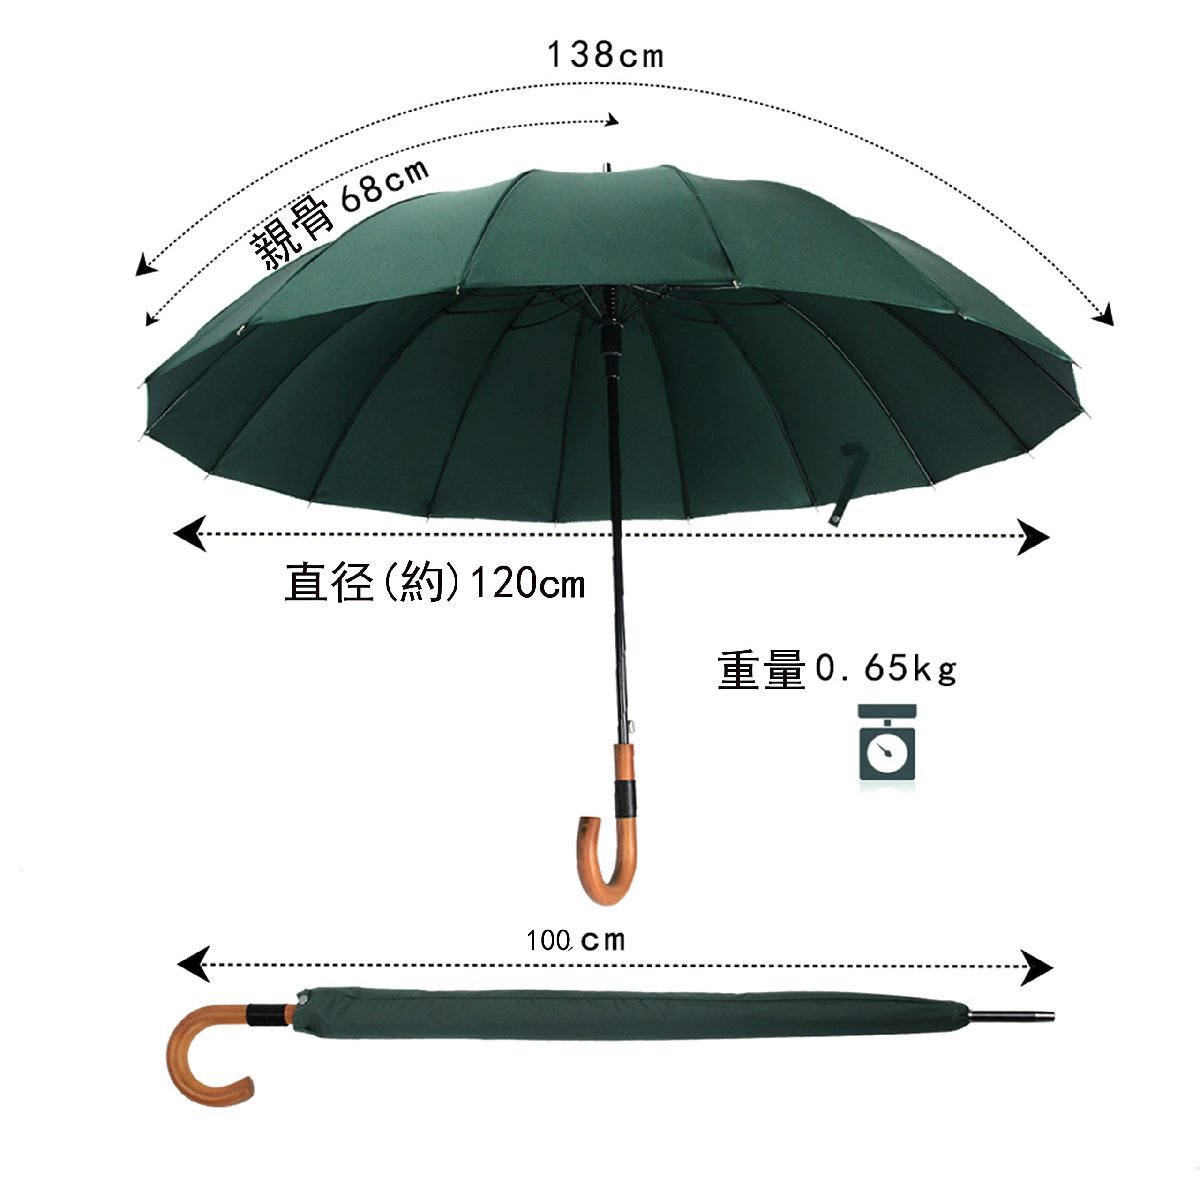 Aiyoupin傘 メンズ 傘 16本骨 紳士傘 ジャンプ傘 大きい 長傘 ワンタッチ傘 丈夫 テフロン加工 撥水 耐風 梅雨対策 晴雨兼用 収納ポ_画像7